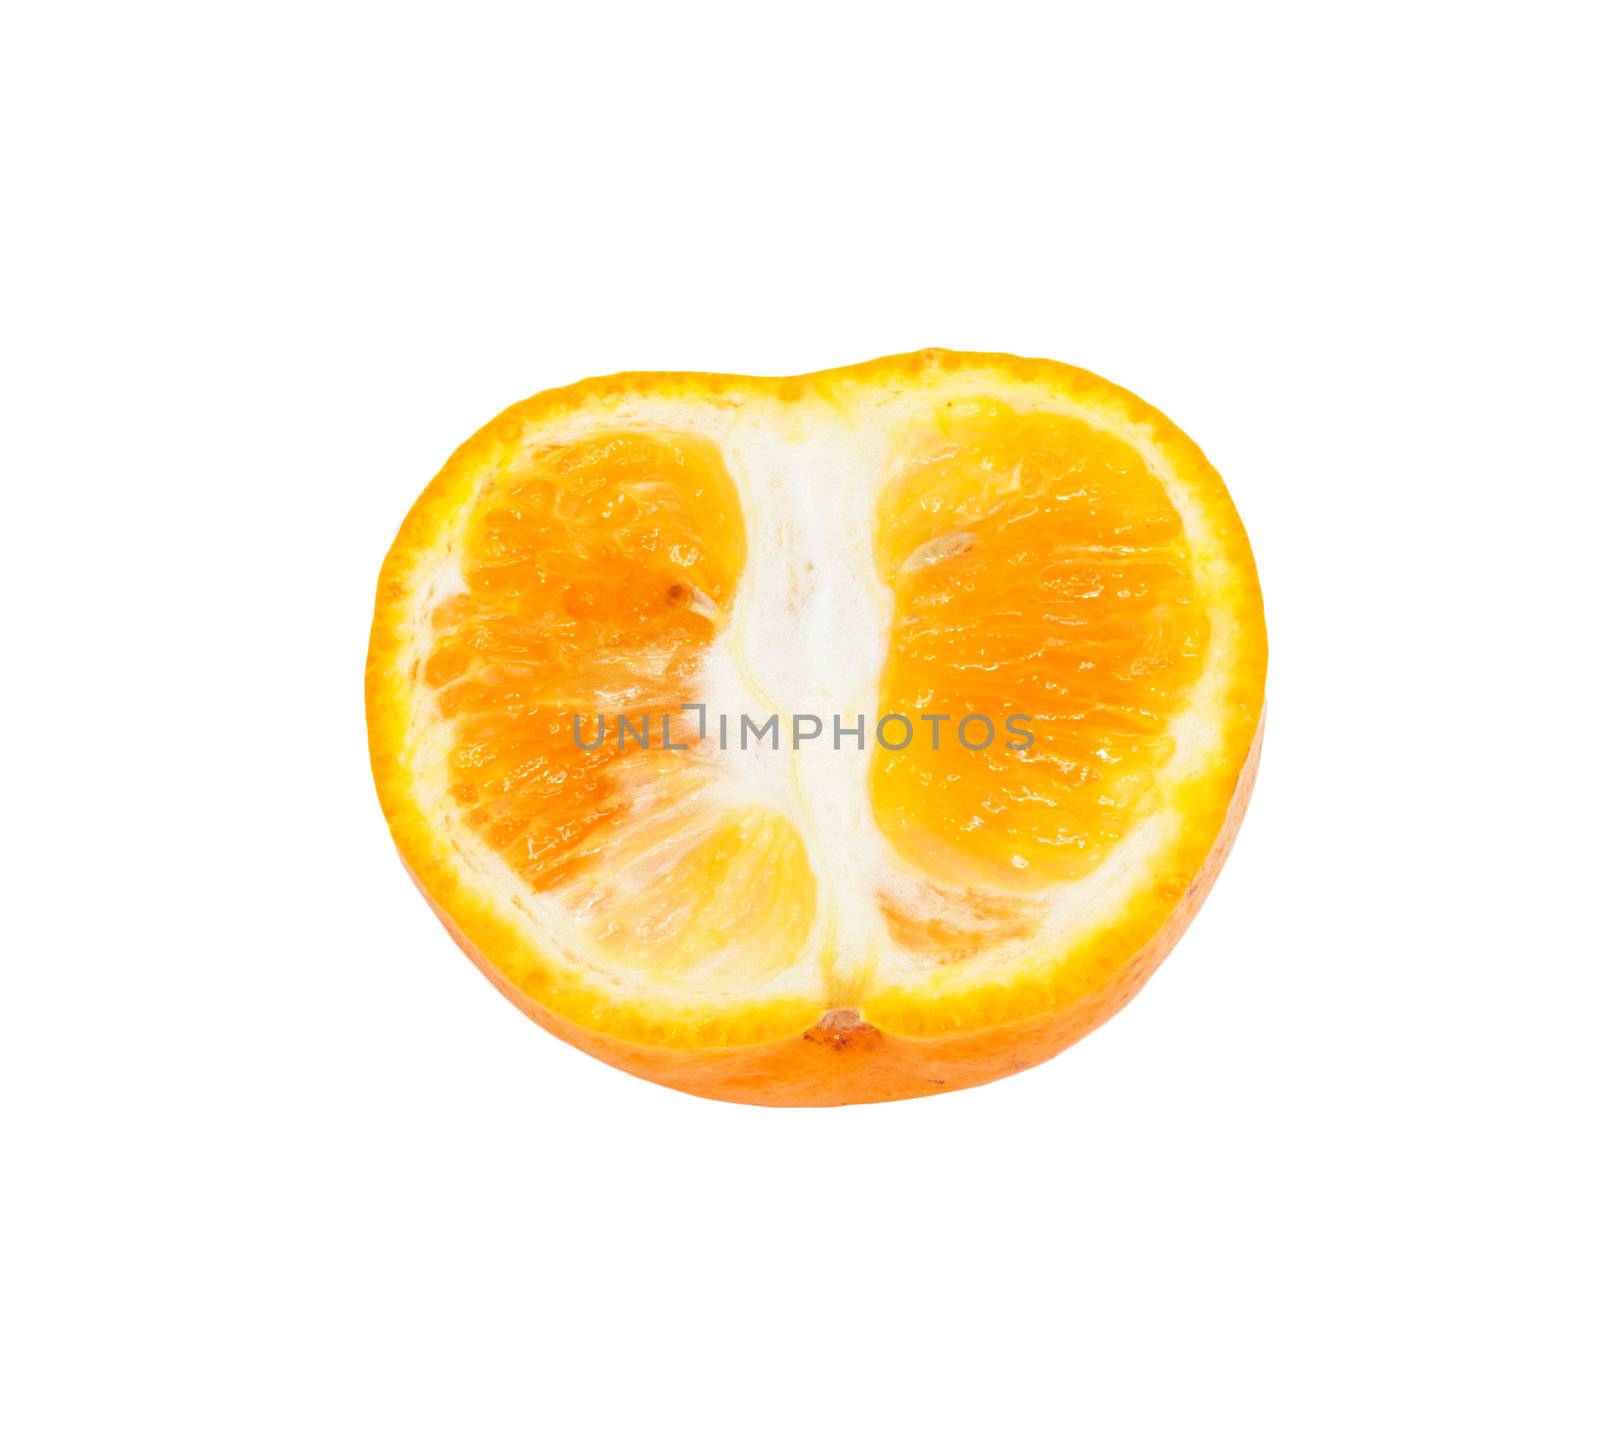 Mandarin isolated on white background 